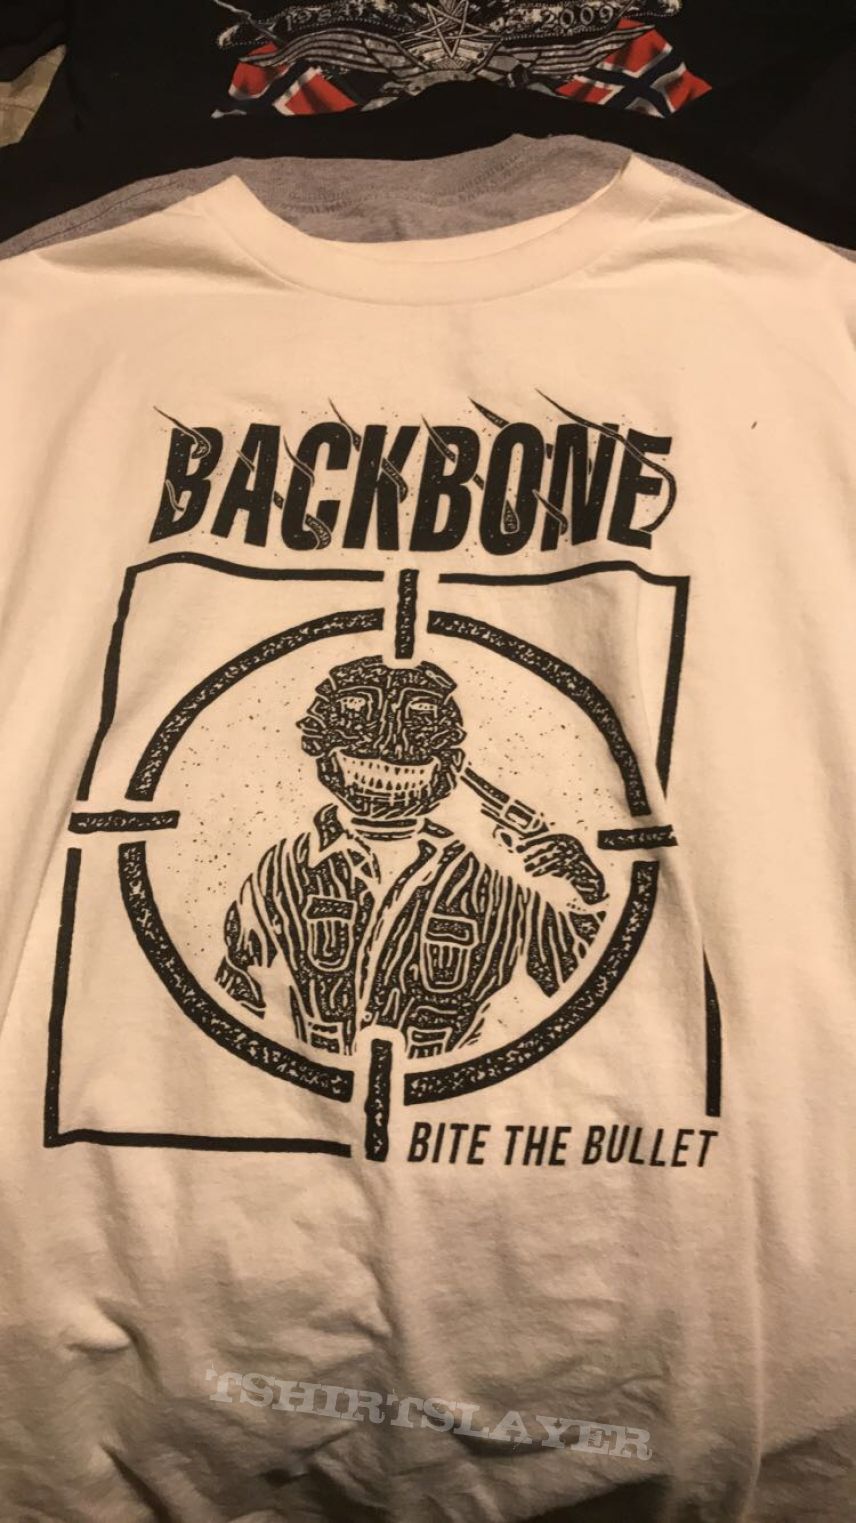 Backbone bite the bullet shirt